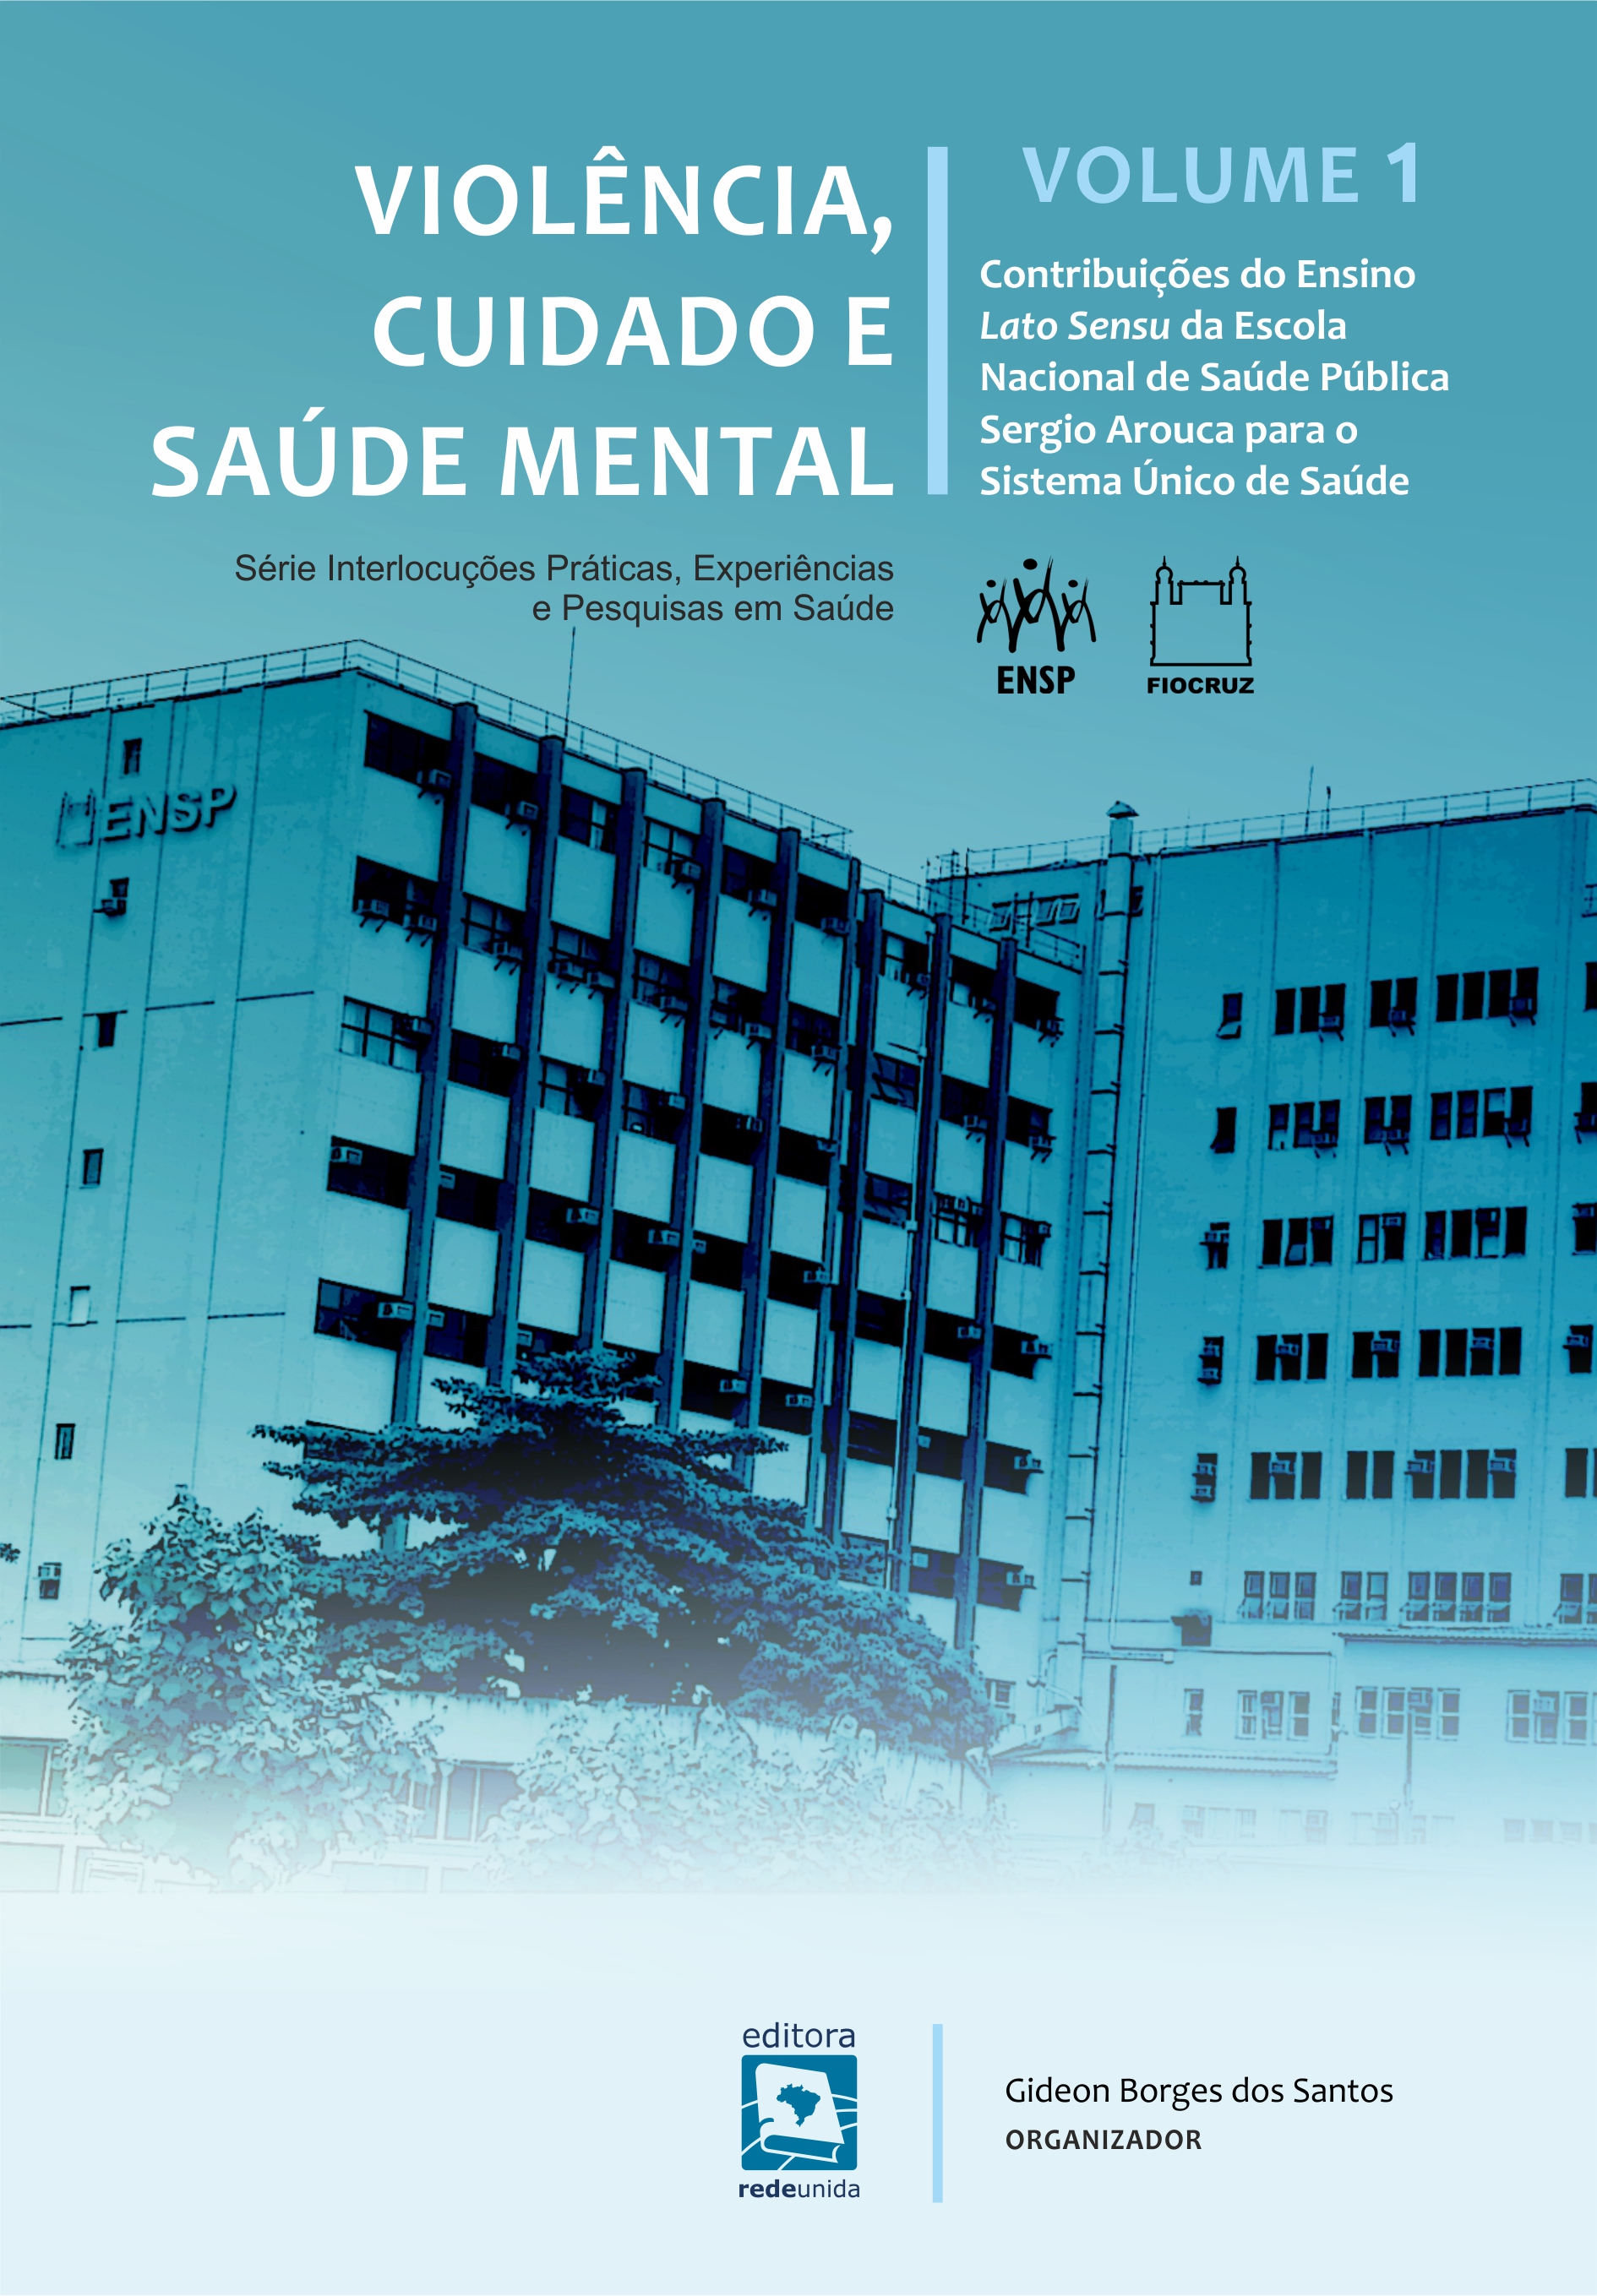 Violência, cuidado e saúde mental: contribuições do ensino Lato Sensu da Escola Nacional de Saúde Pública Sergio Arouca para o Sistema Único de Saúde – volume 1